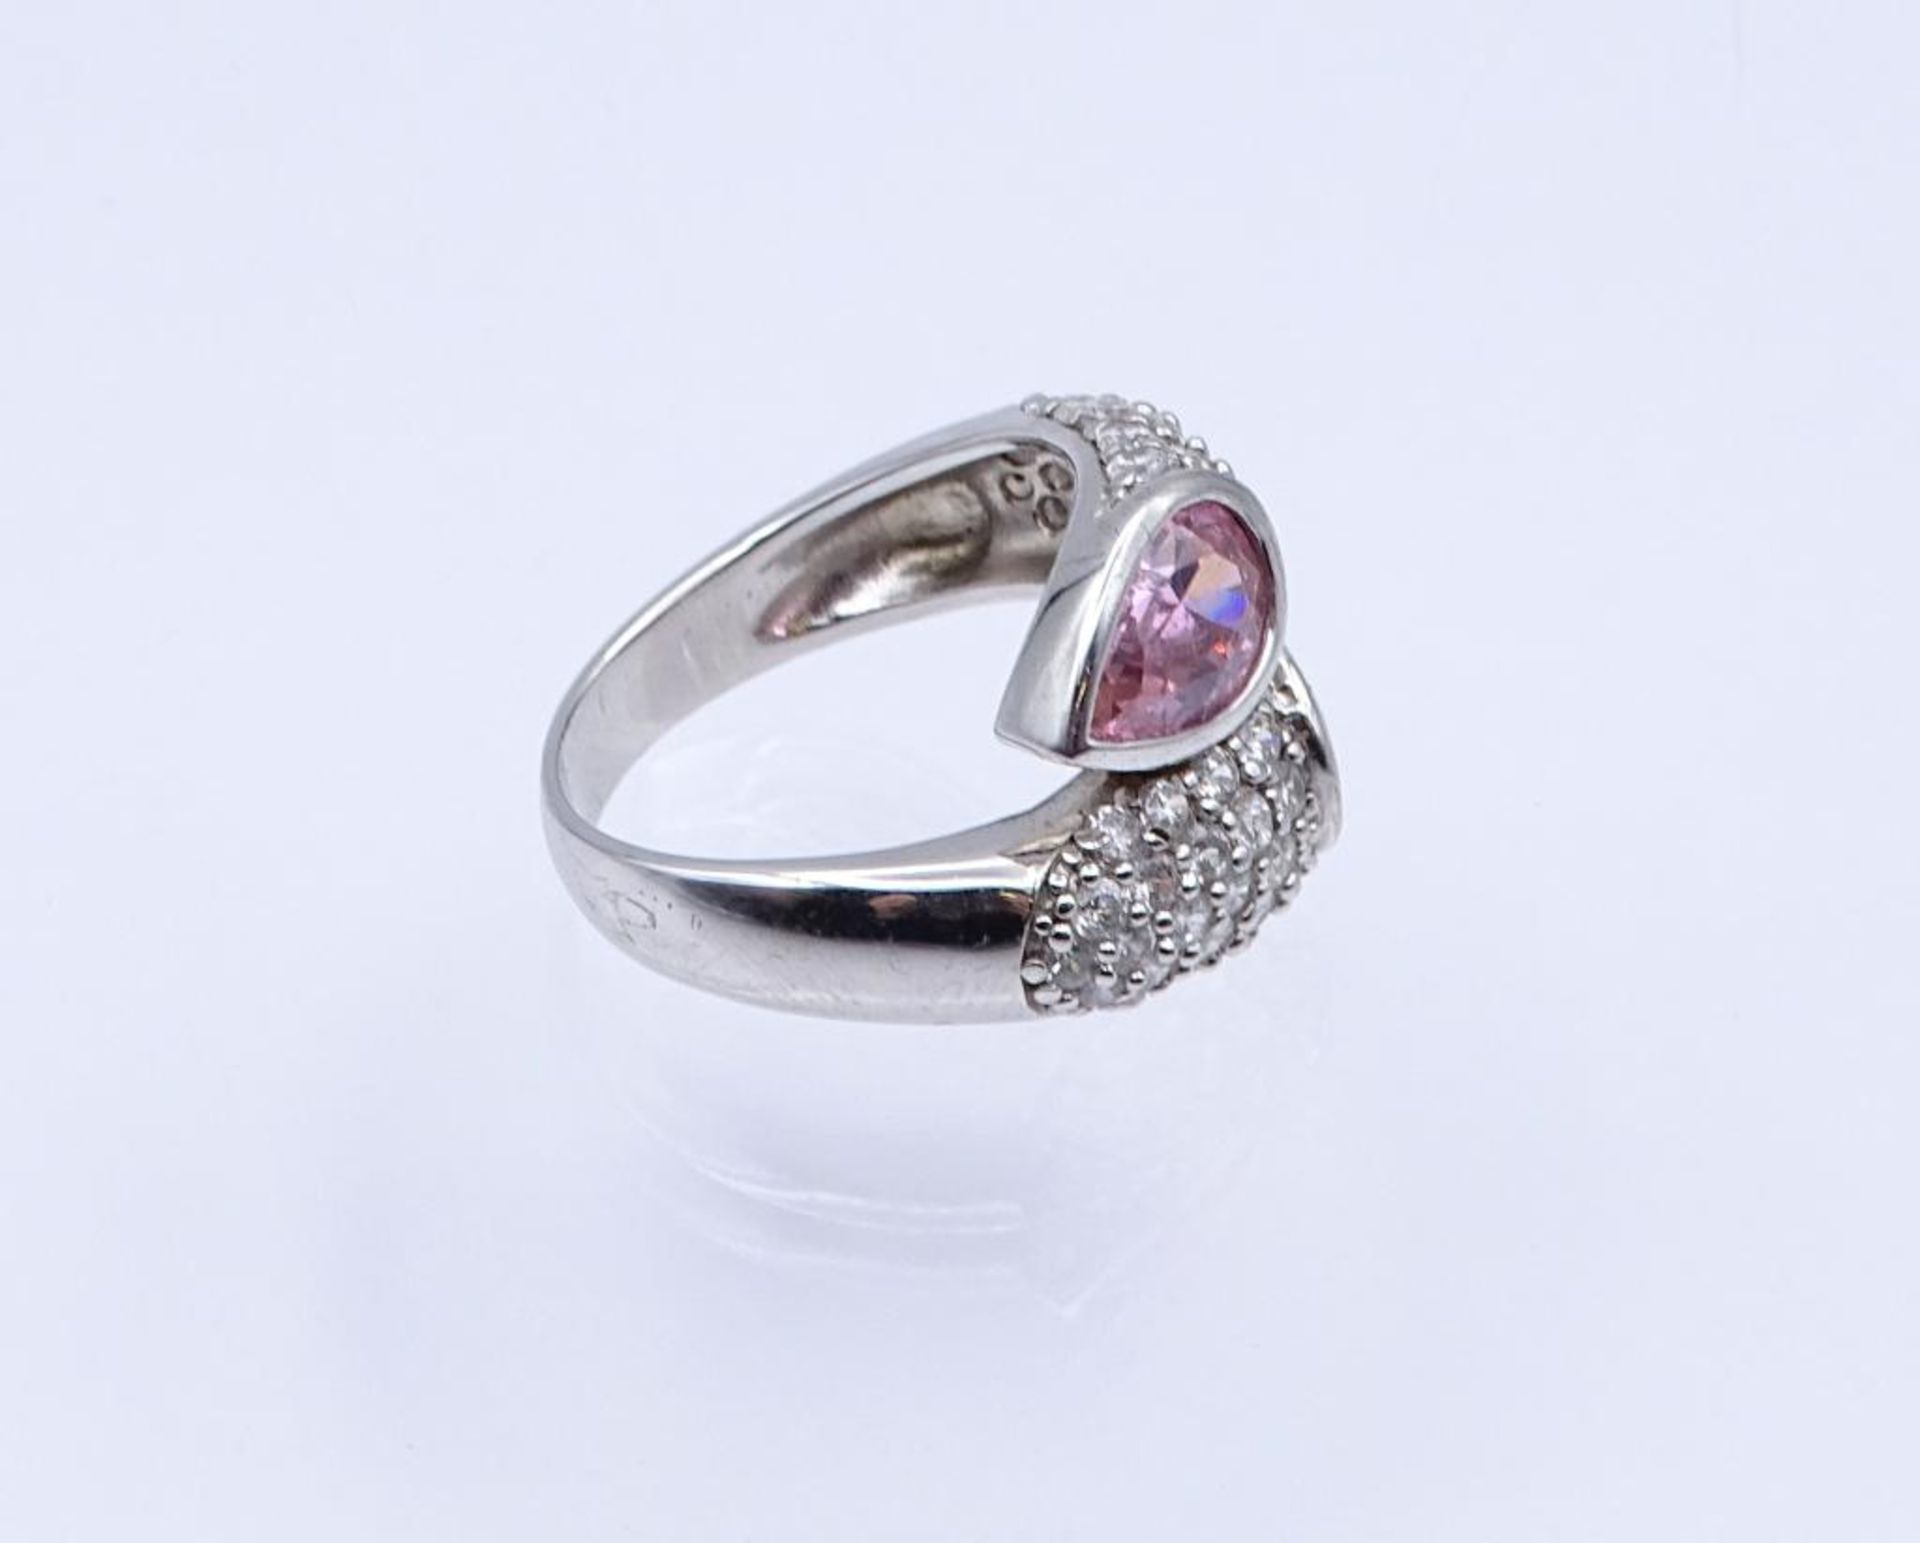 Silber Ring mit pinken und klaren Steinen, 9,9gr., RG 60- - -22.61 % buyer's premium on the hammer - Bild 2 aus 3